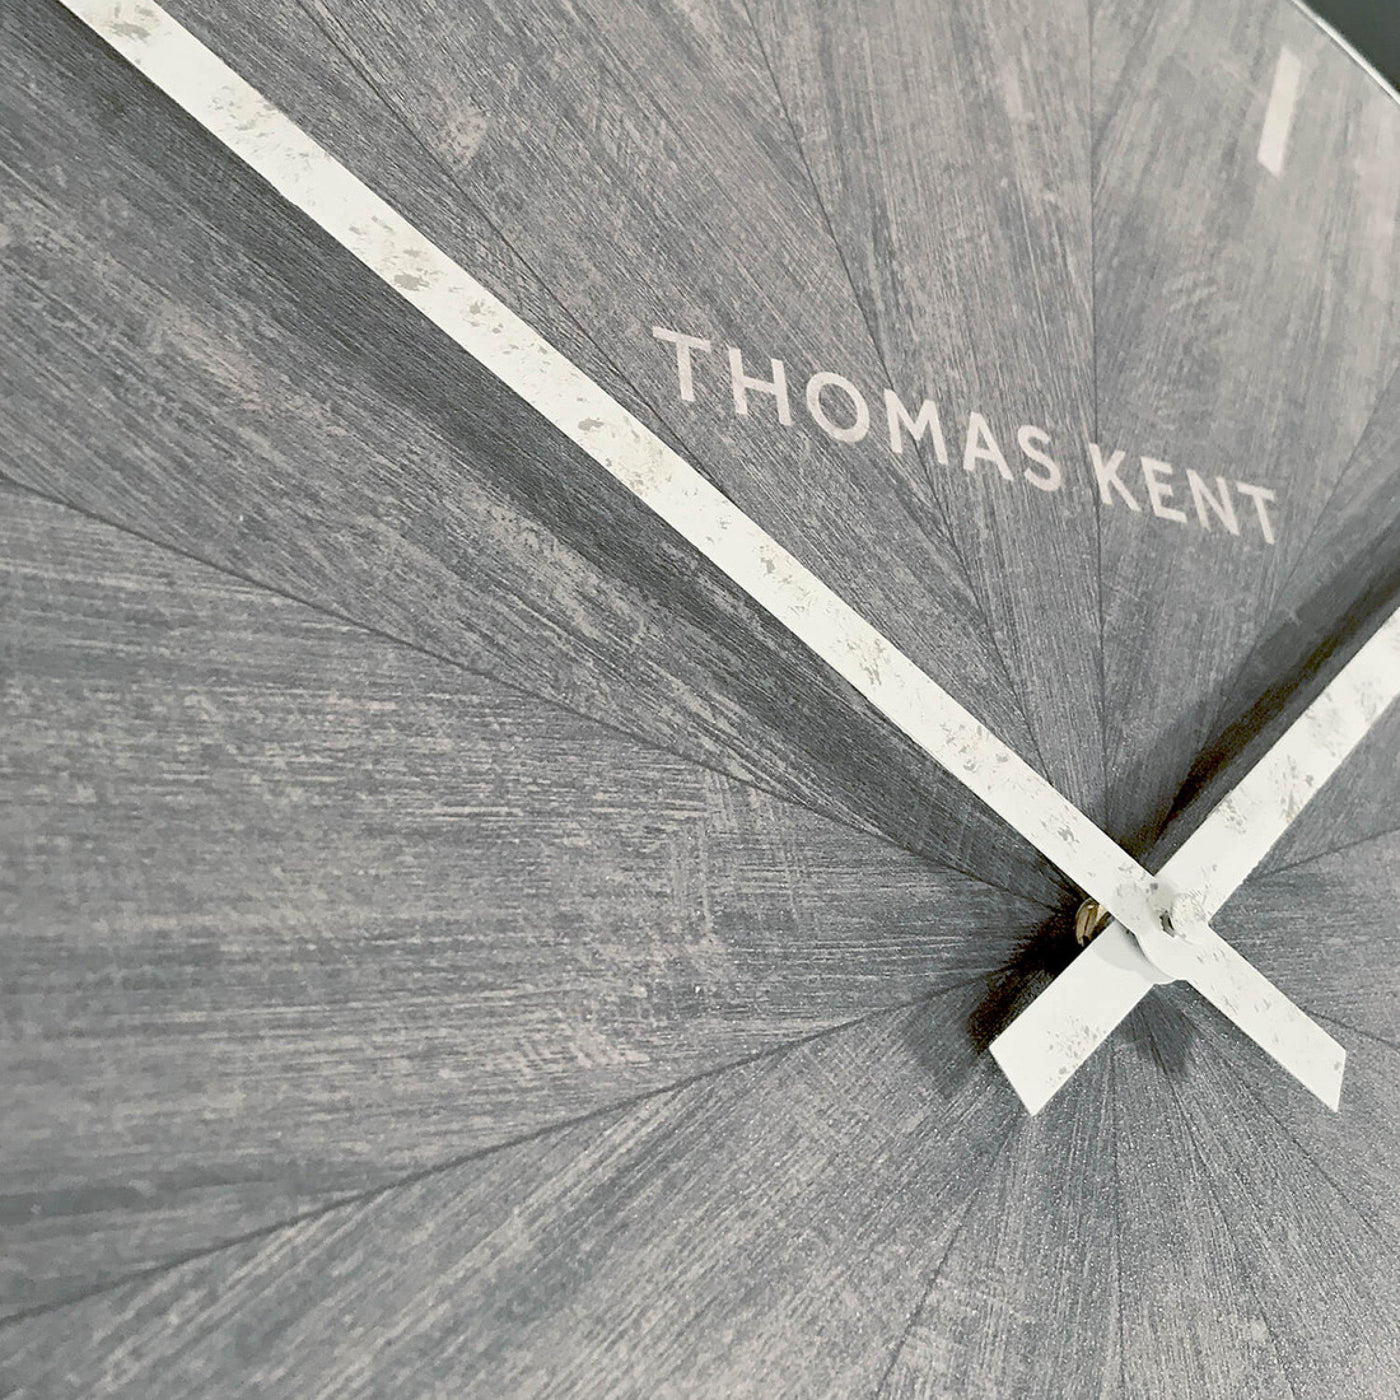 Thomas Kent London. Wharf Wall Clock 30" (76cm) Limestone - timeframedclocks